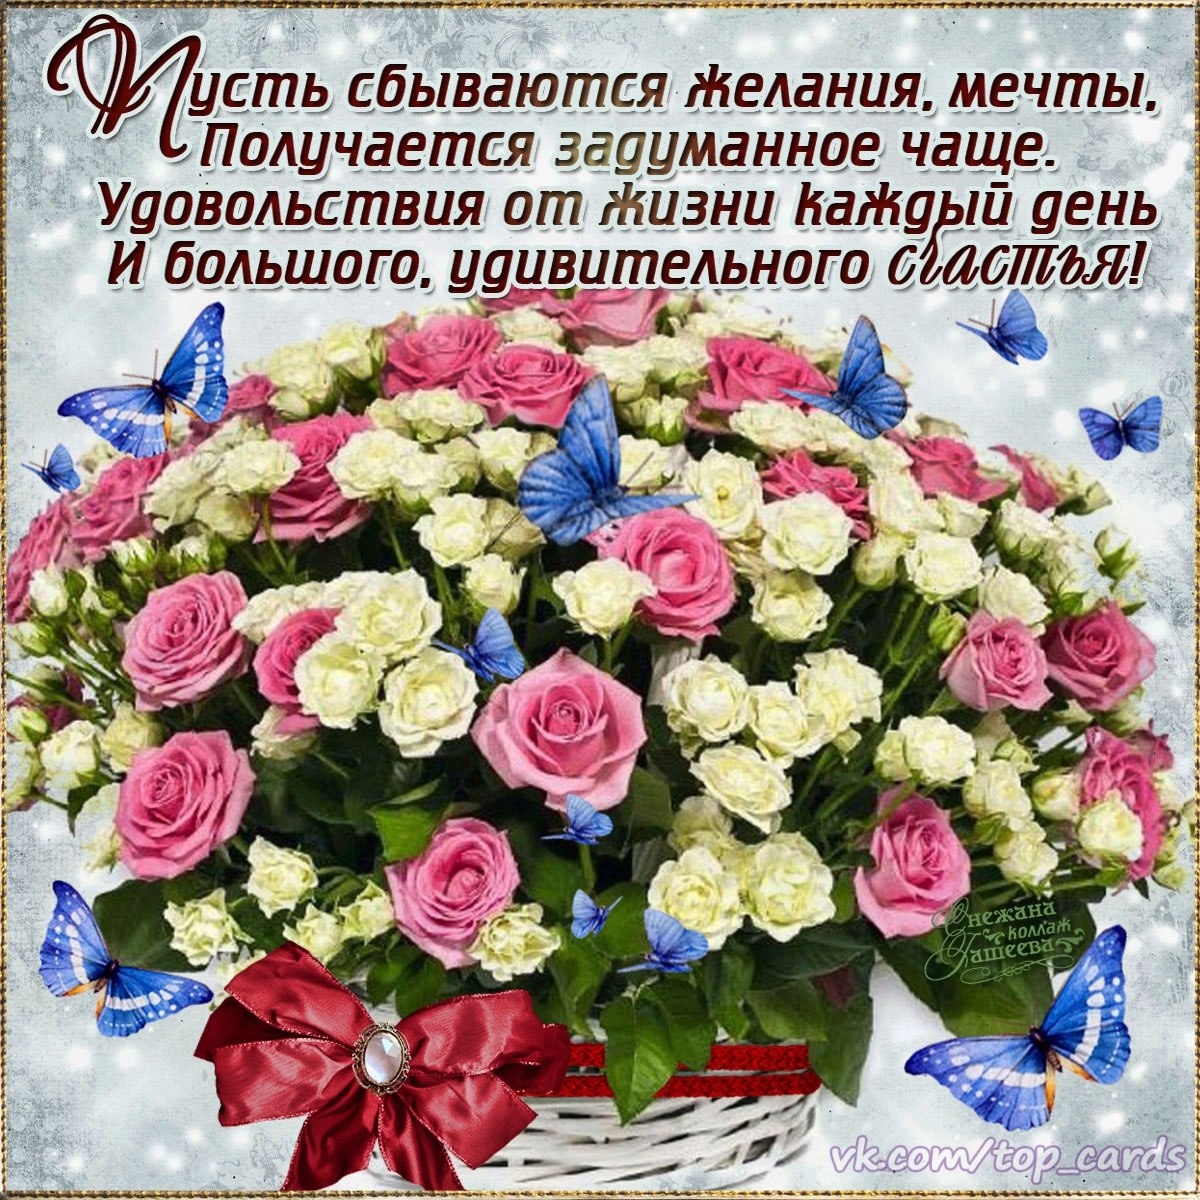 Поздравление с днем рождения красивые цветы картинки. Поздравления с днем рождения цветы. Поздравления с днём рождения с цветами красивые. Поздравления с днём рождения красивые букеты. С днём рождения букеты цветов с пожеланиями.